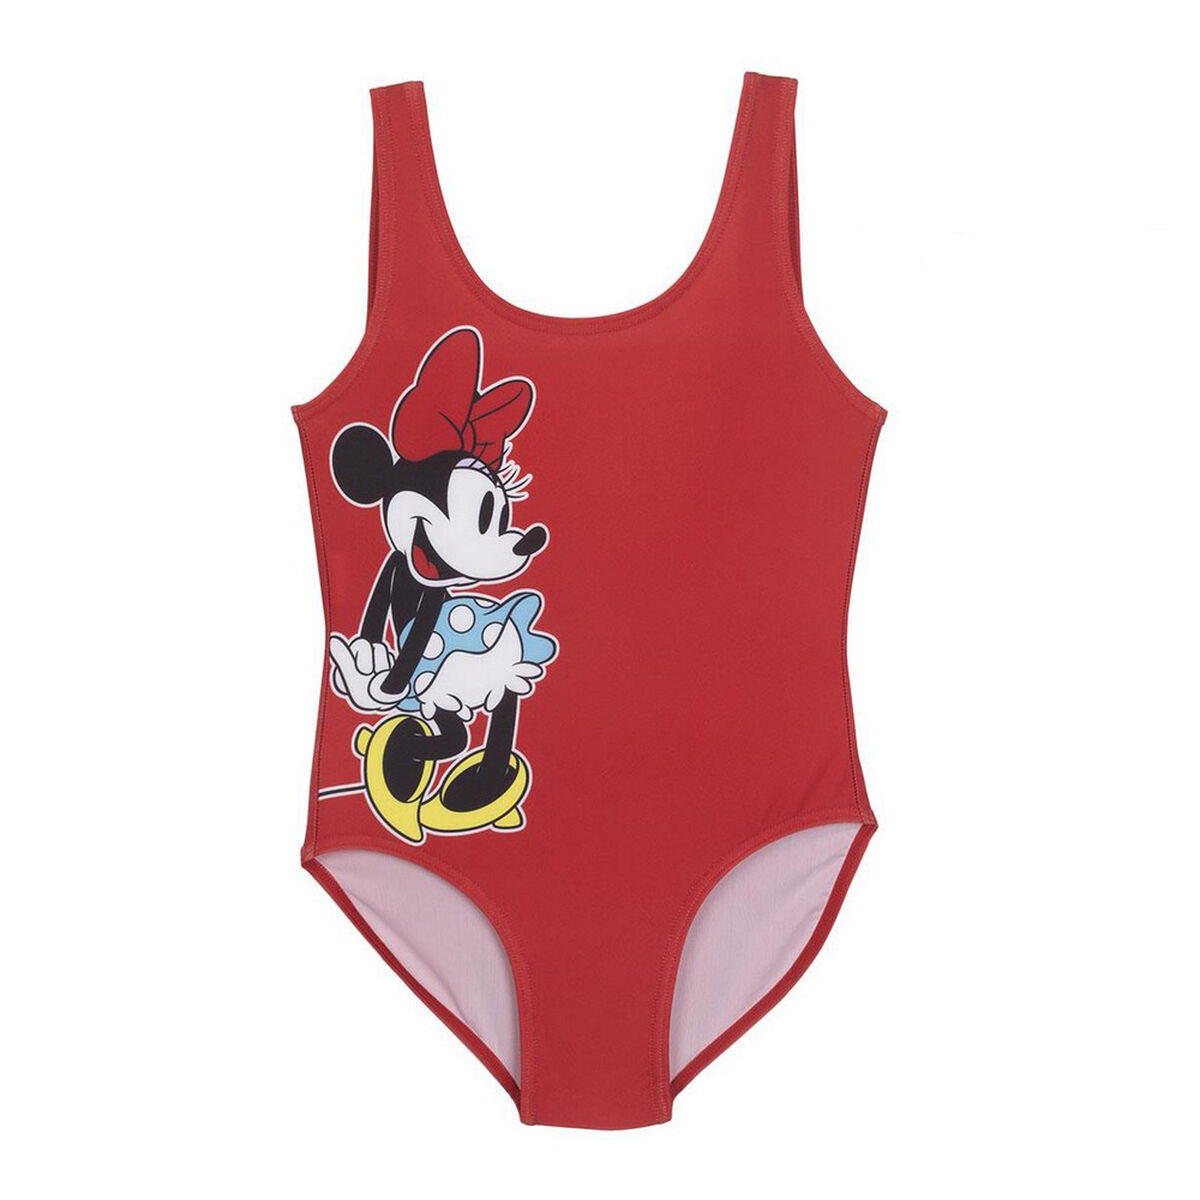 Osta tuote Tyttöjen uimapuku Minnie Mouse Punainen verkkokaupastamme Korhone: Urheilu & Vapaa-aika 20% alennuksella koodilla VIIKONLOPPU